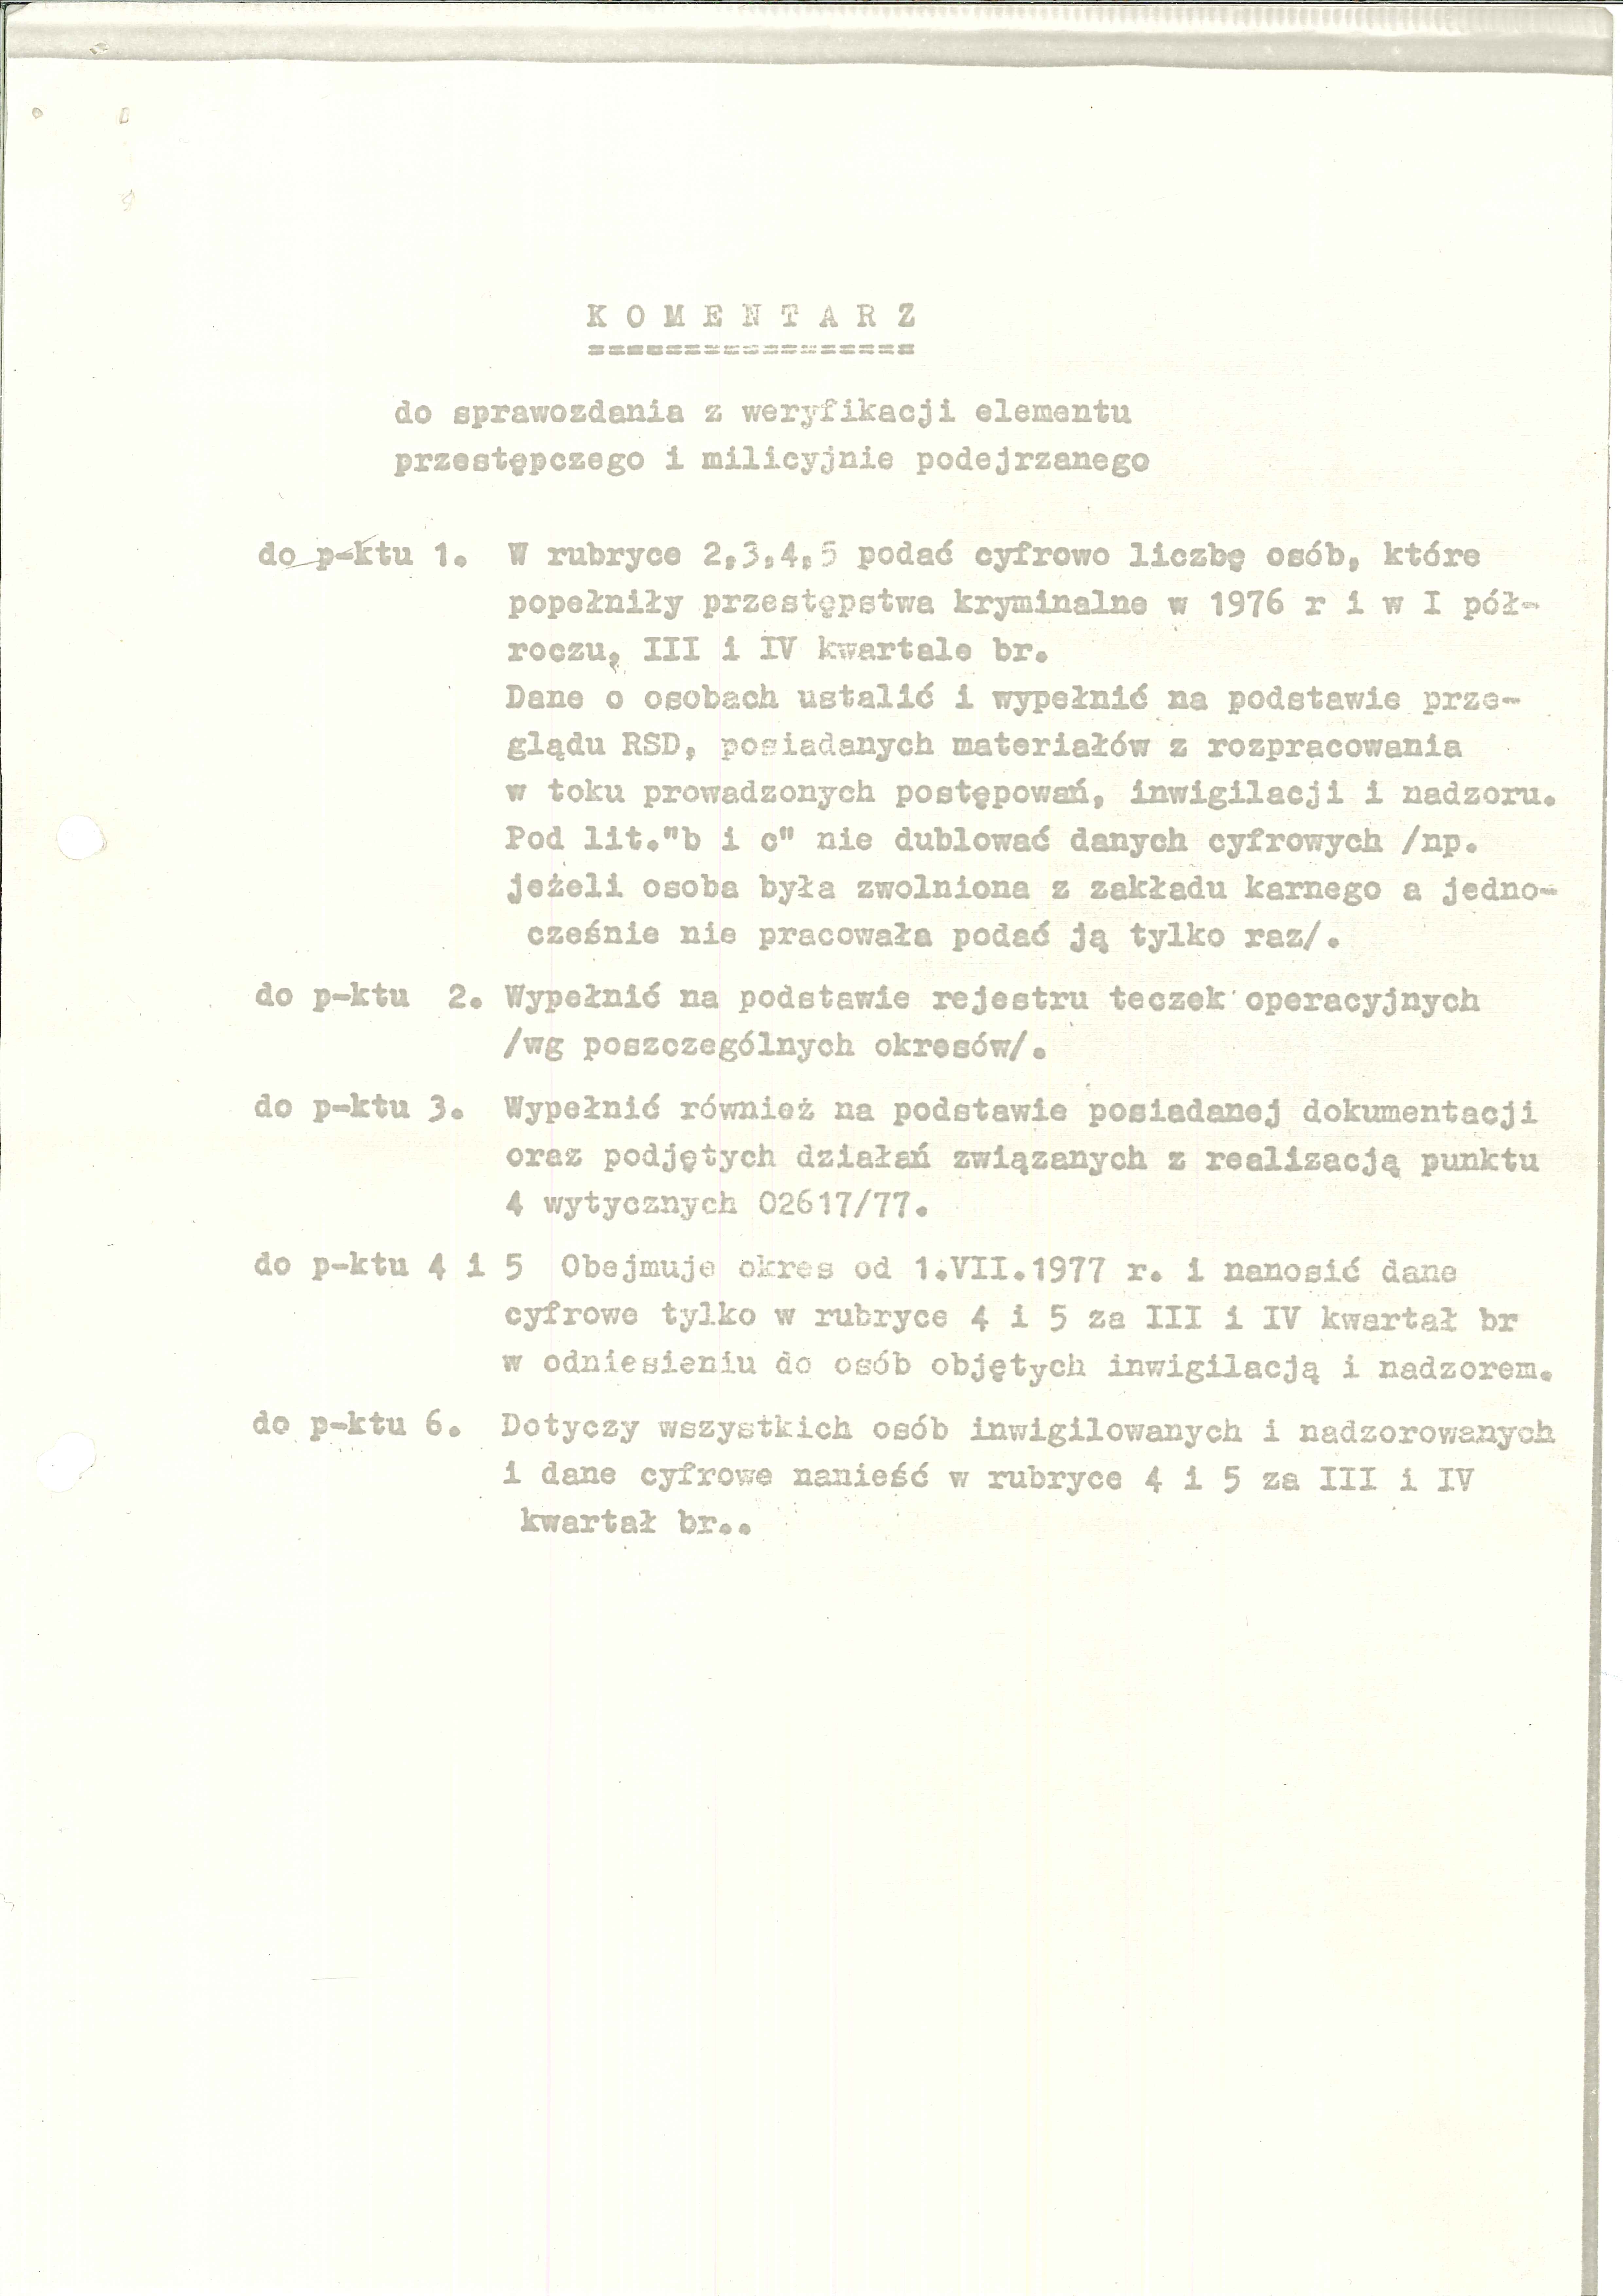 1977.06.30 Ok KWMO Szczecin - Program dla porządku publicznego - 20130213054847725_0005.jpg